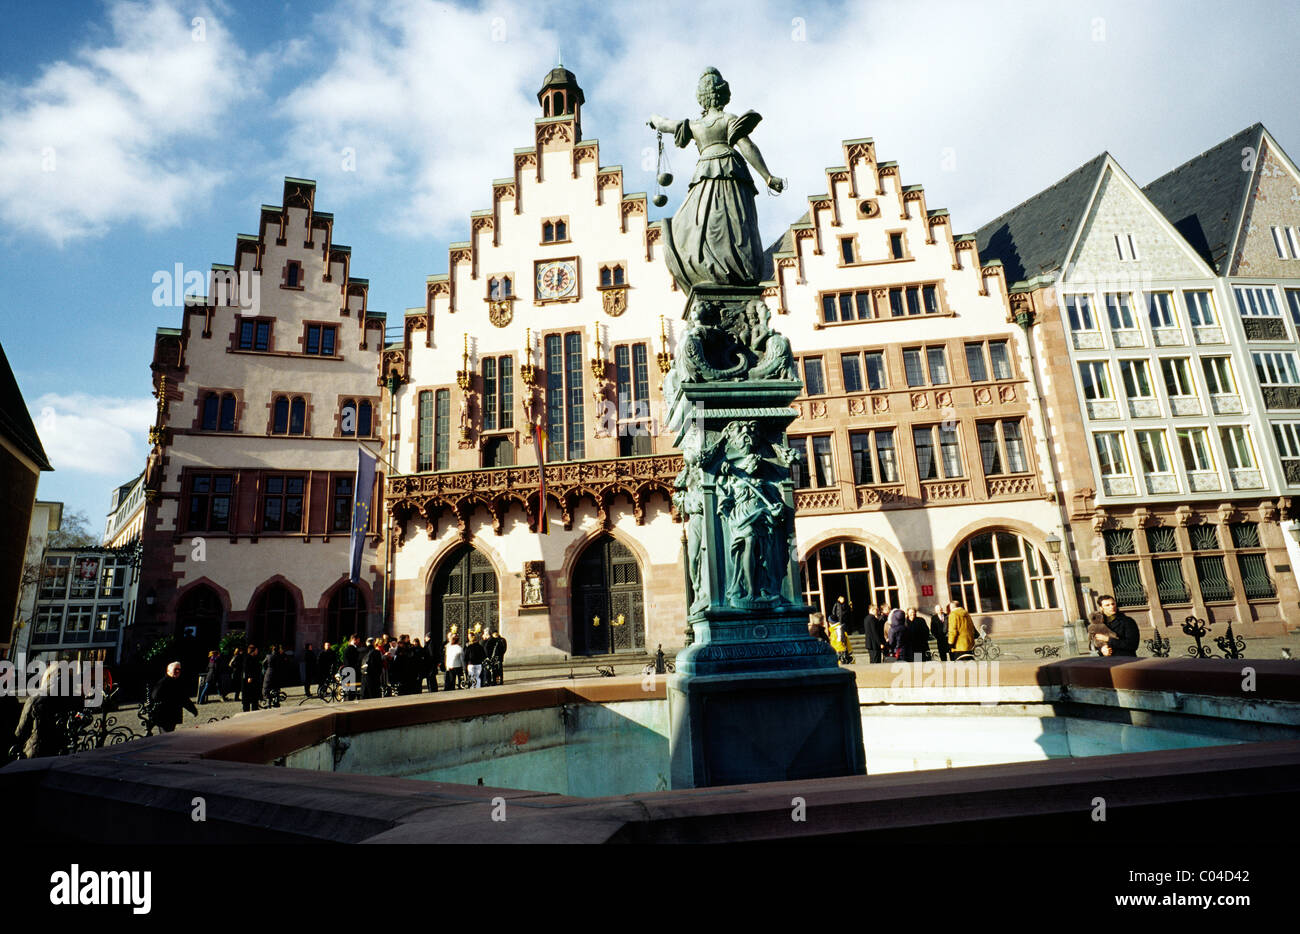 La Germania medievale - bene della giustizia (Gerechtigkeitsbrunnen) nella parte anteriore del Römer city hall presso il Römerberg a Francoforte am Main. Foto Stock